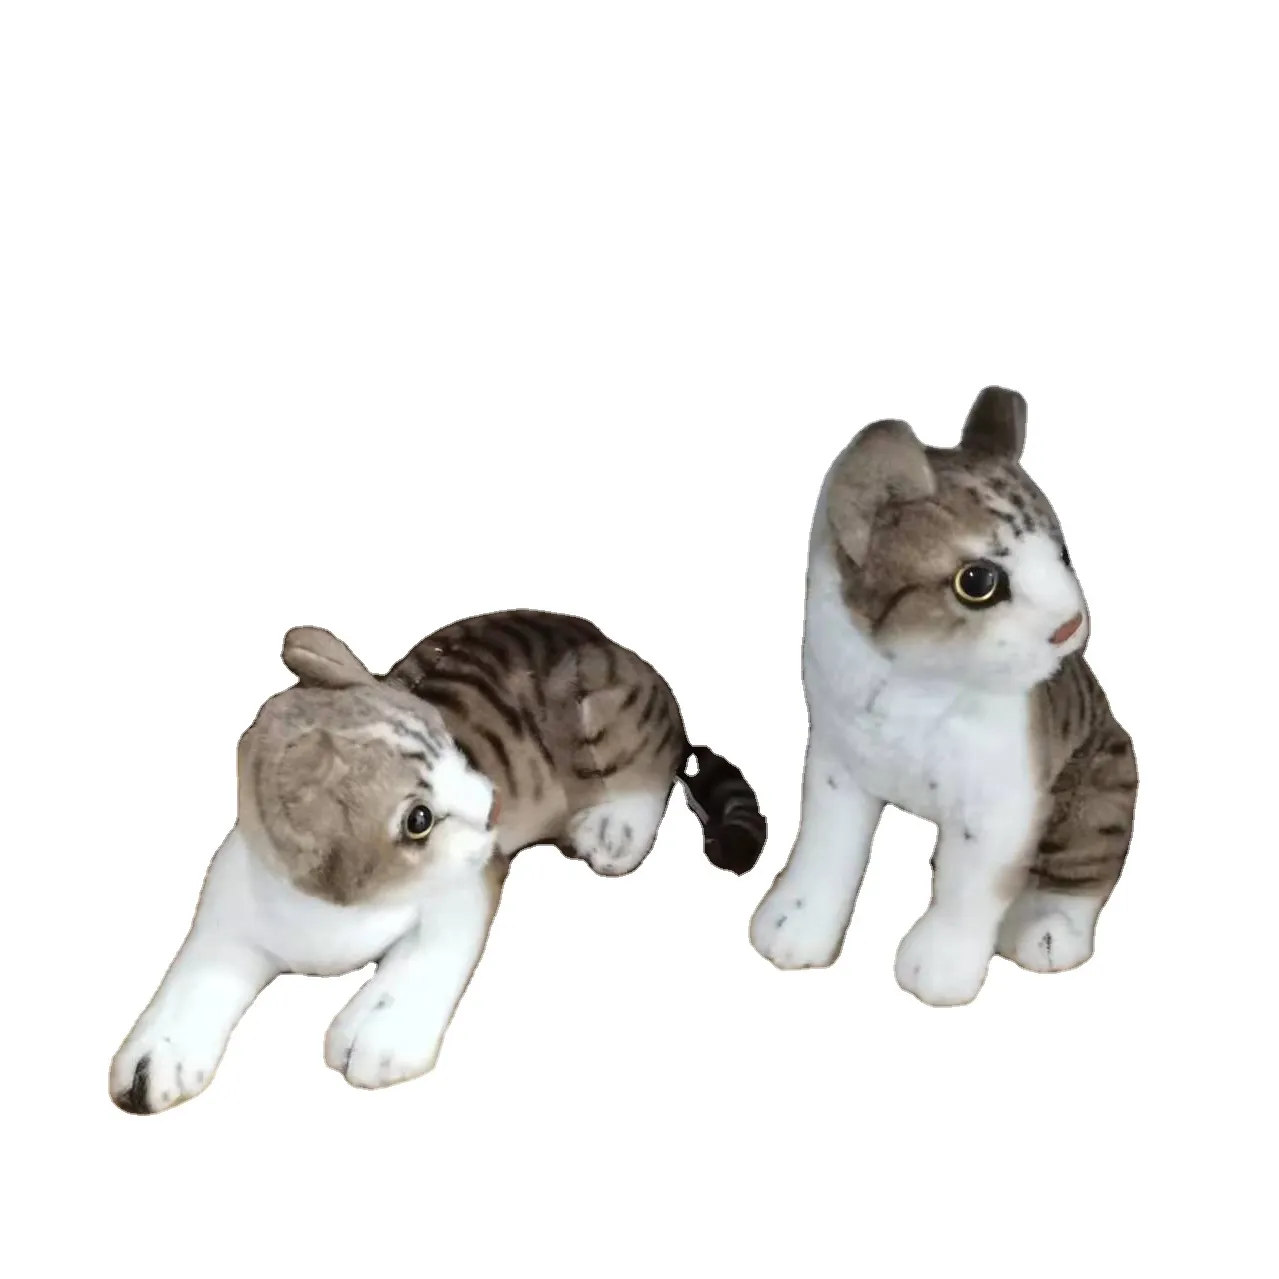 Boneka Binatang Ukuran Besar Boneka Bantal Sofa Kucing Lucu Dekorasi Rumah Lembut Tubuh Panjang Bentuk Kucing Memeluk Bantal Mewah